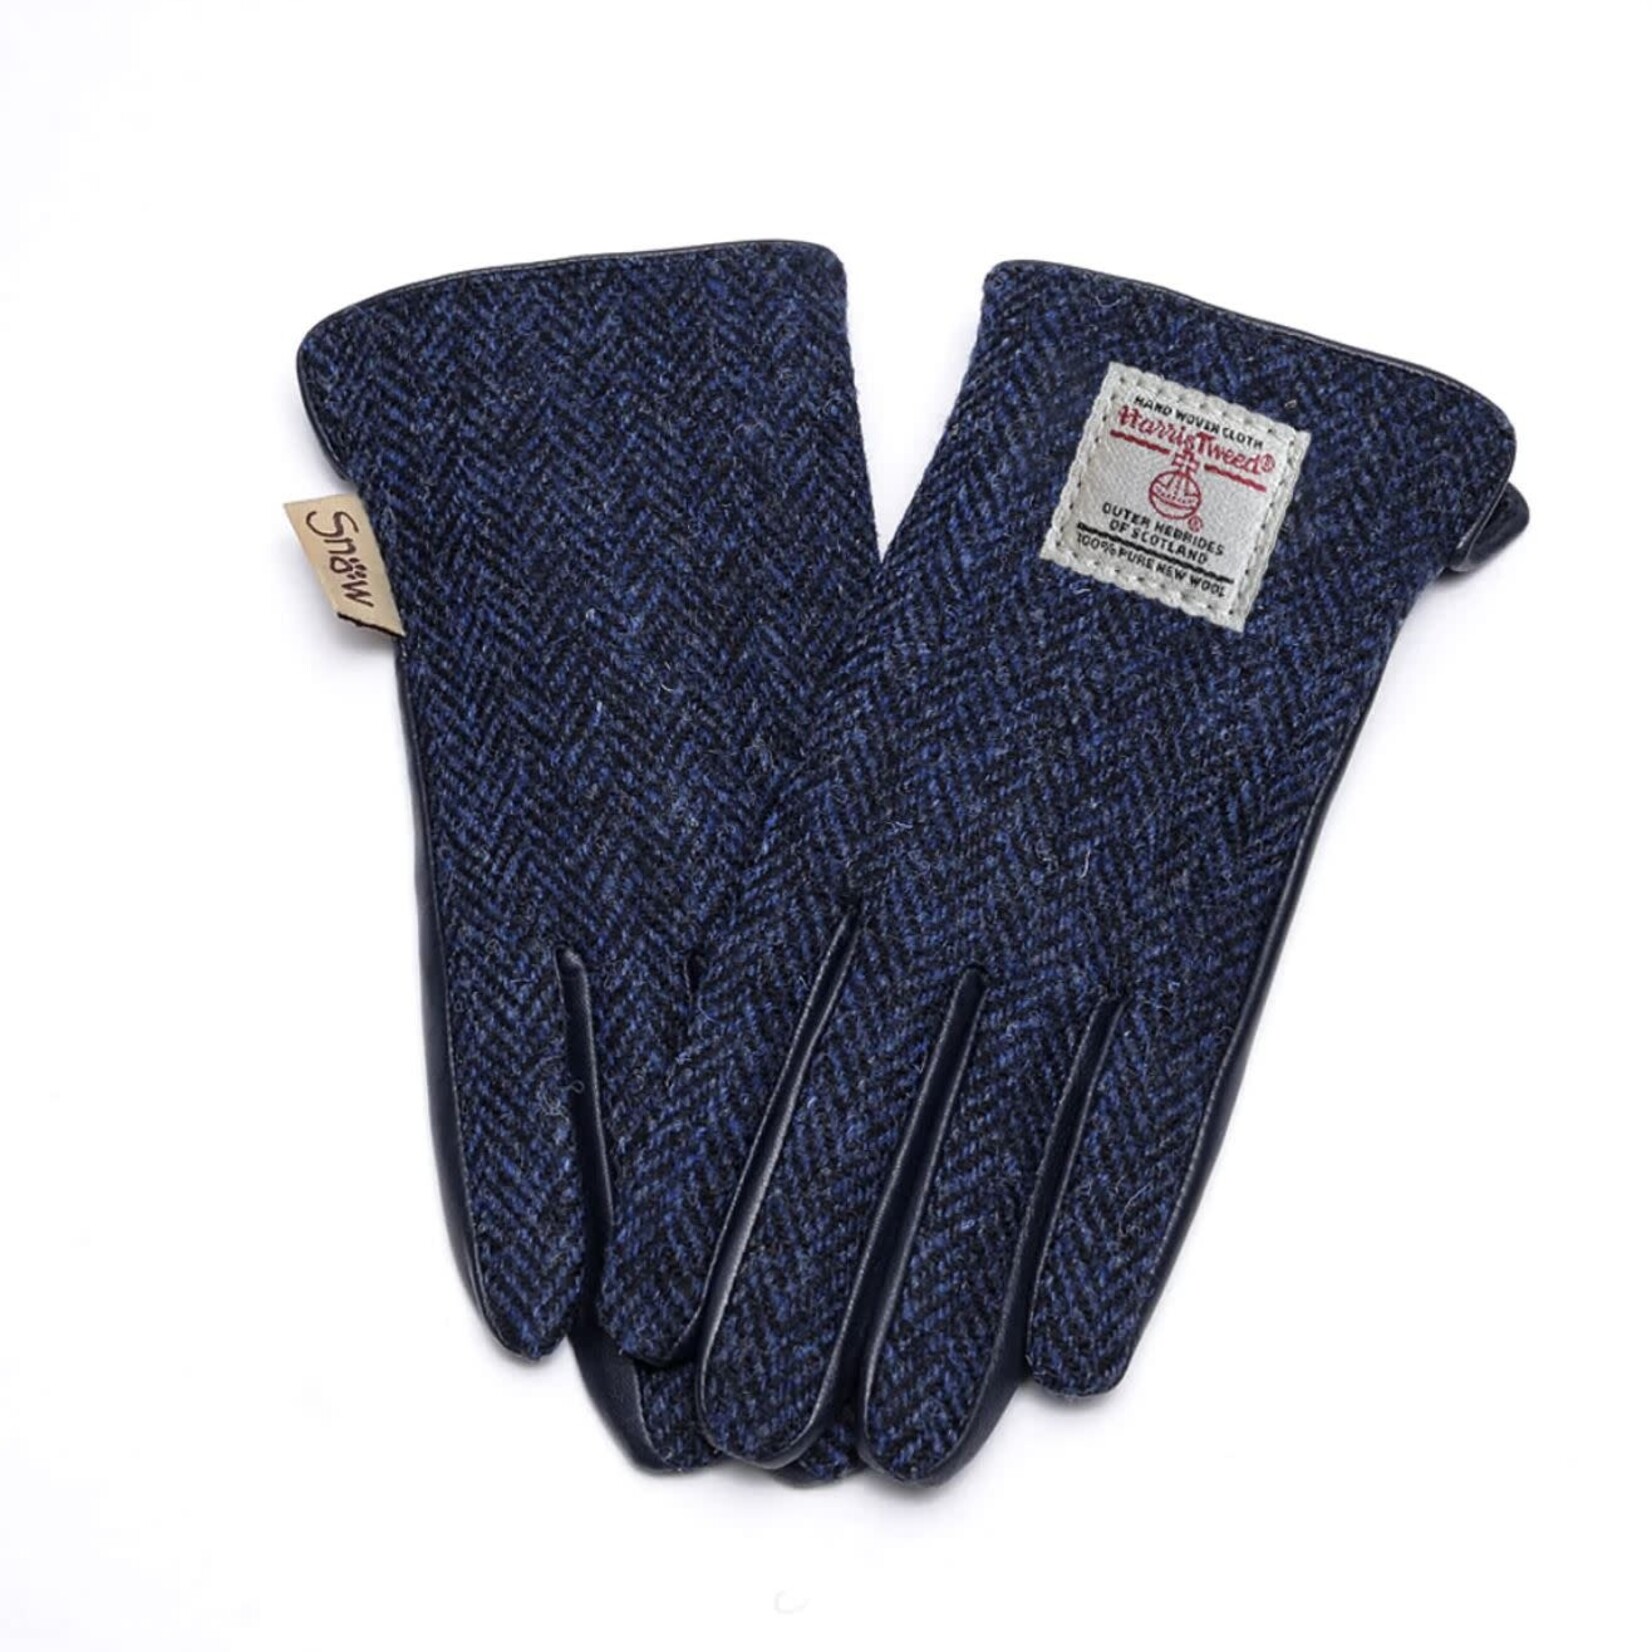 Islander Men's Tweed & Leather Gloves: Navy Herringbone